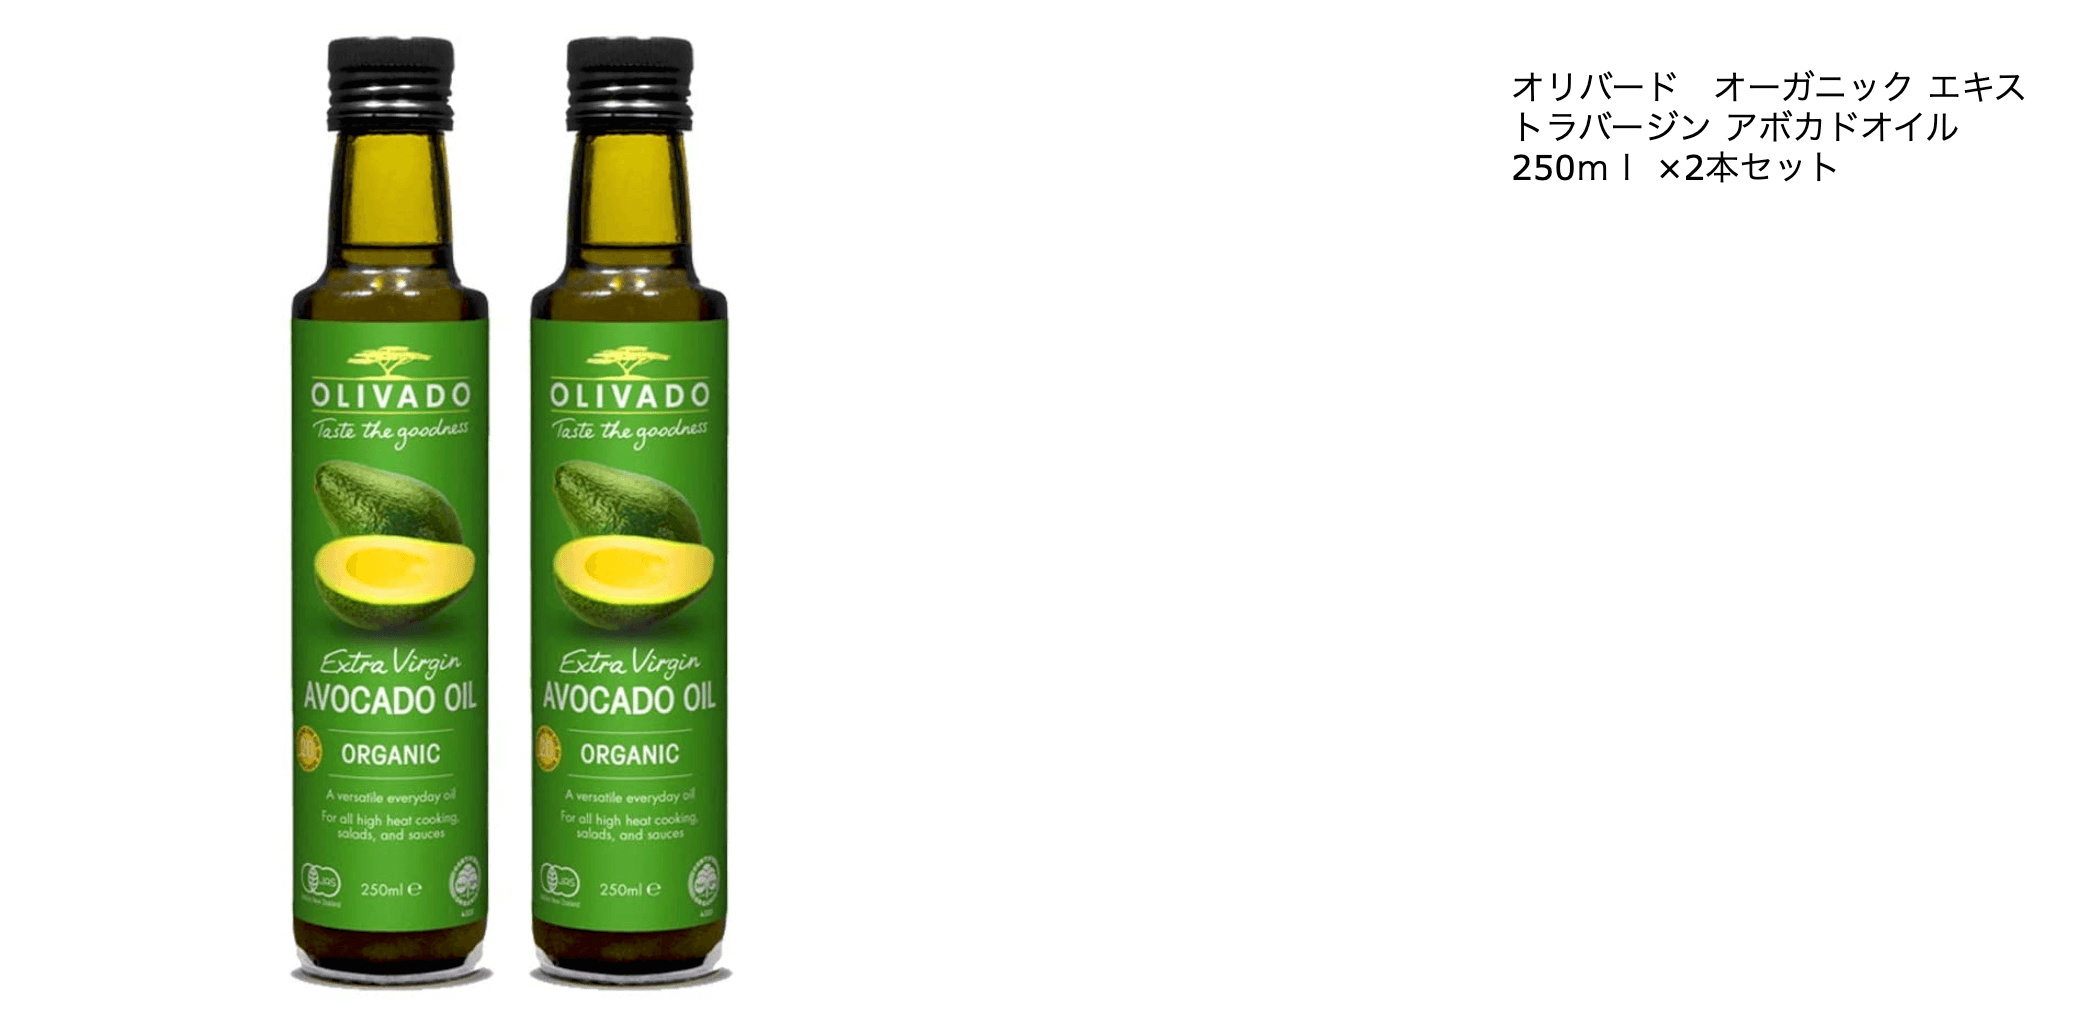 Olivado Extra Virgin Avocado Oil - Organic